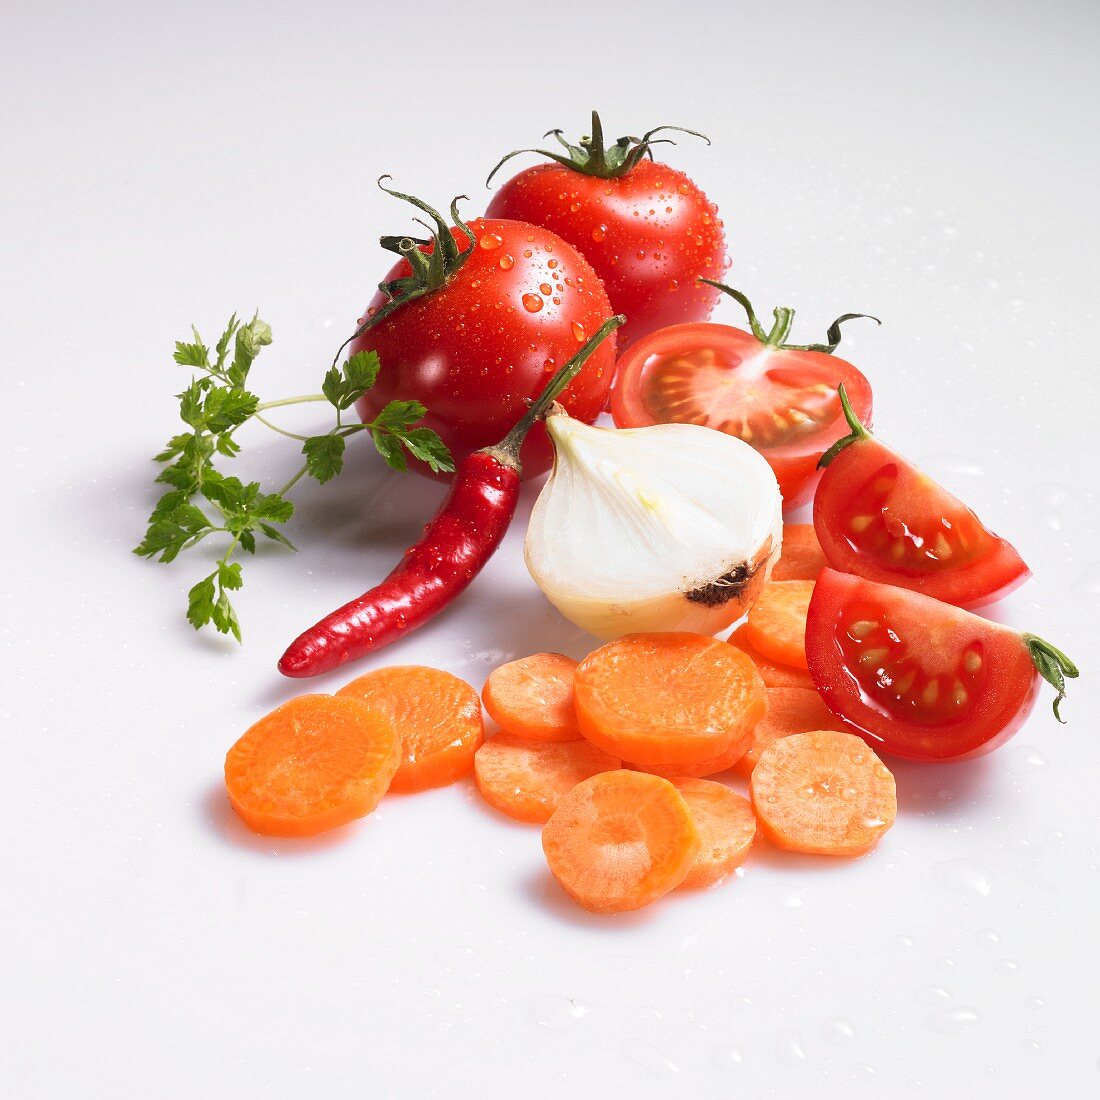 Möhrenscheiben, Zwiebel, Tomaten, Chilischote und Kerbel mit Wassertropfen